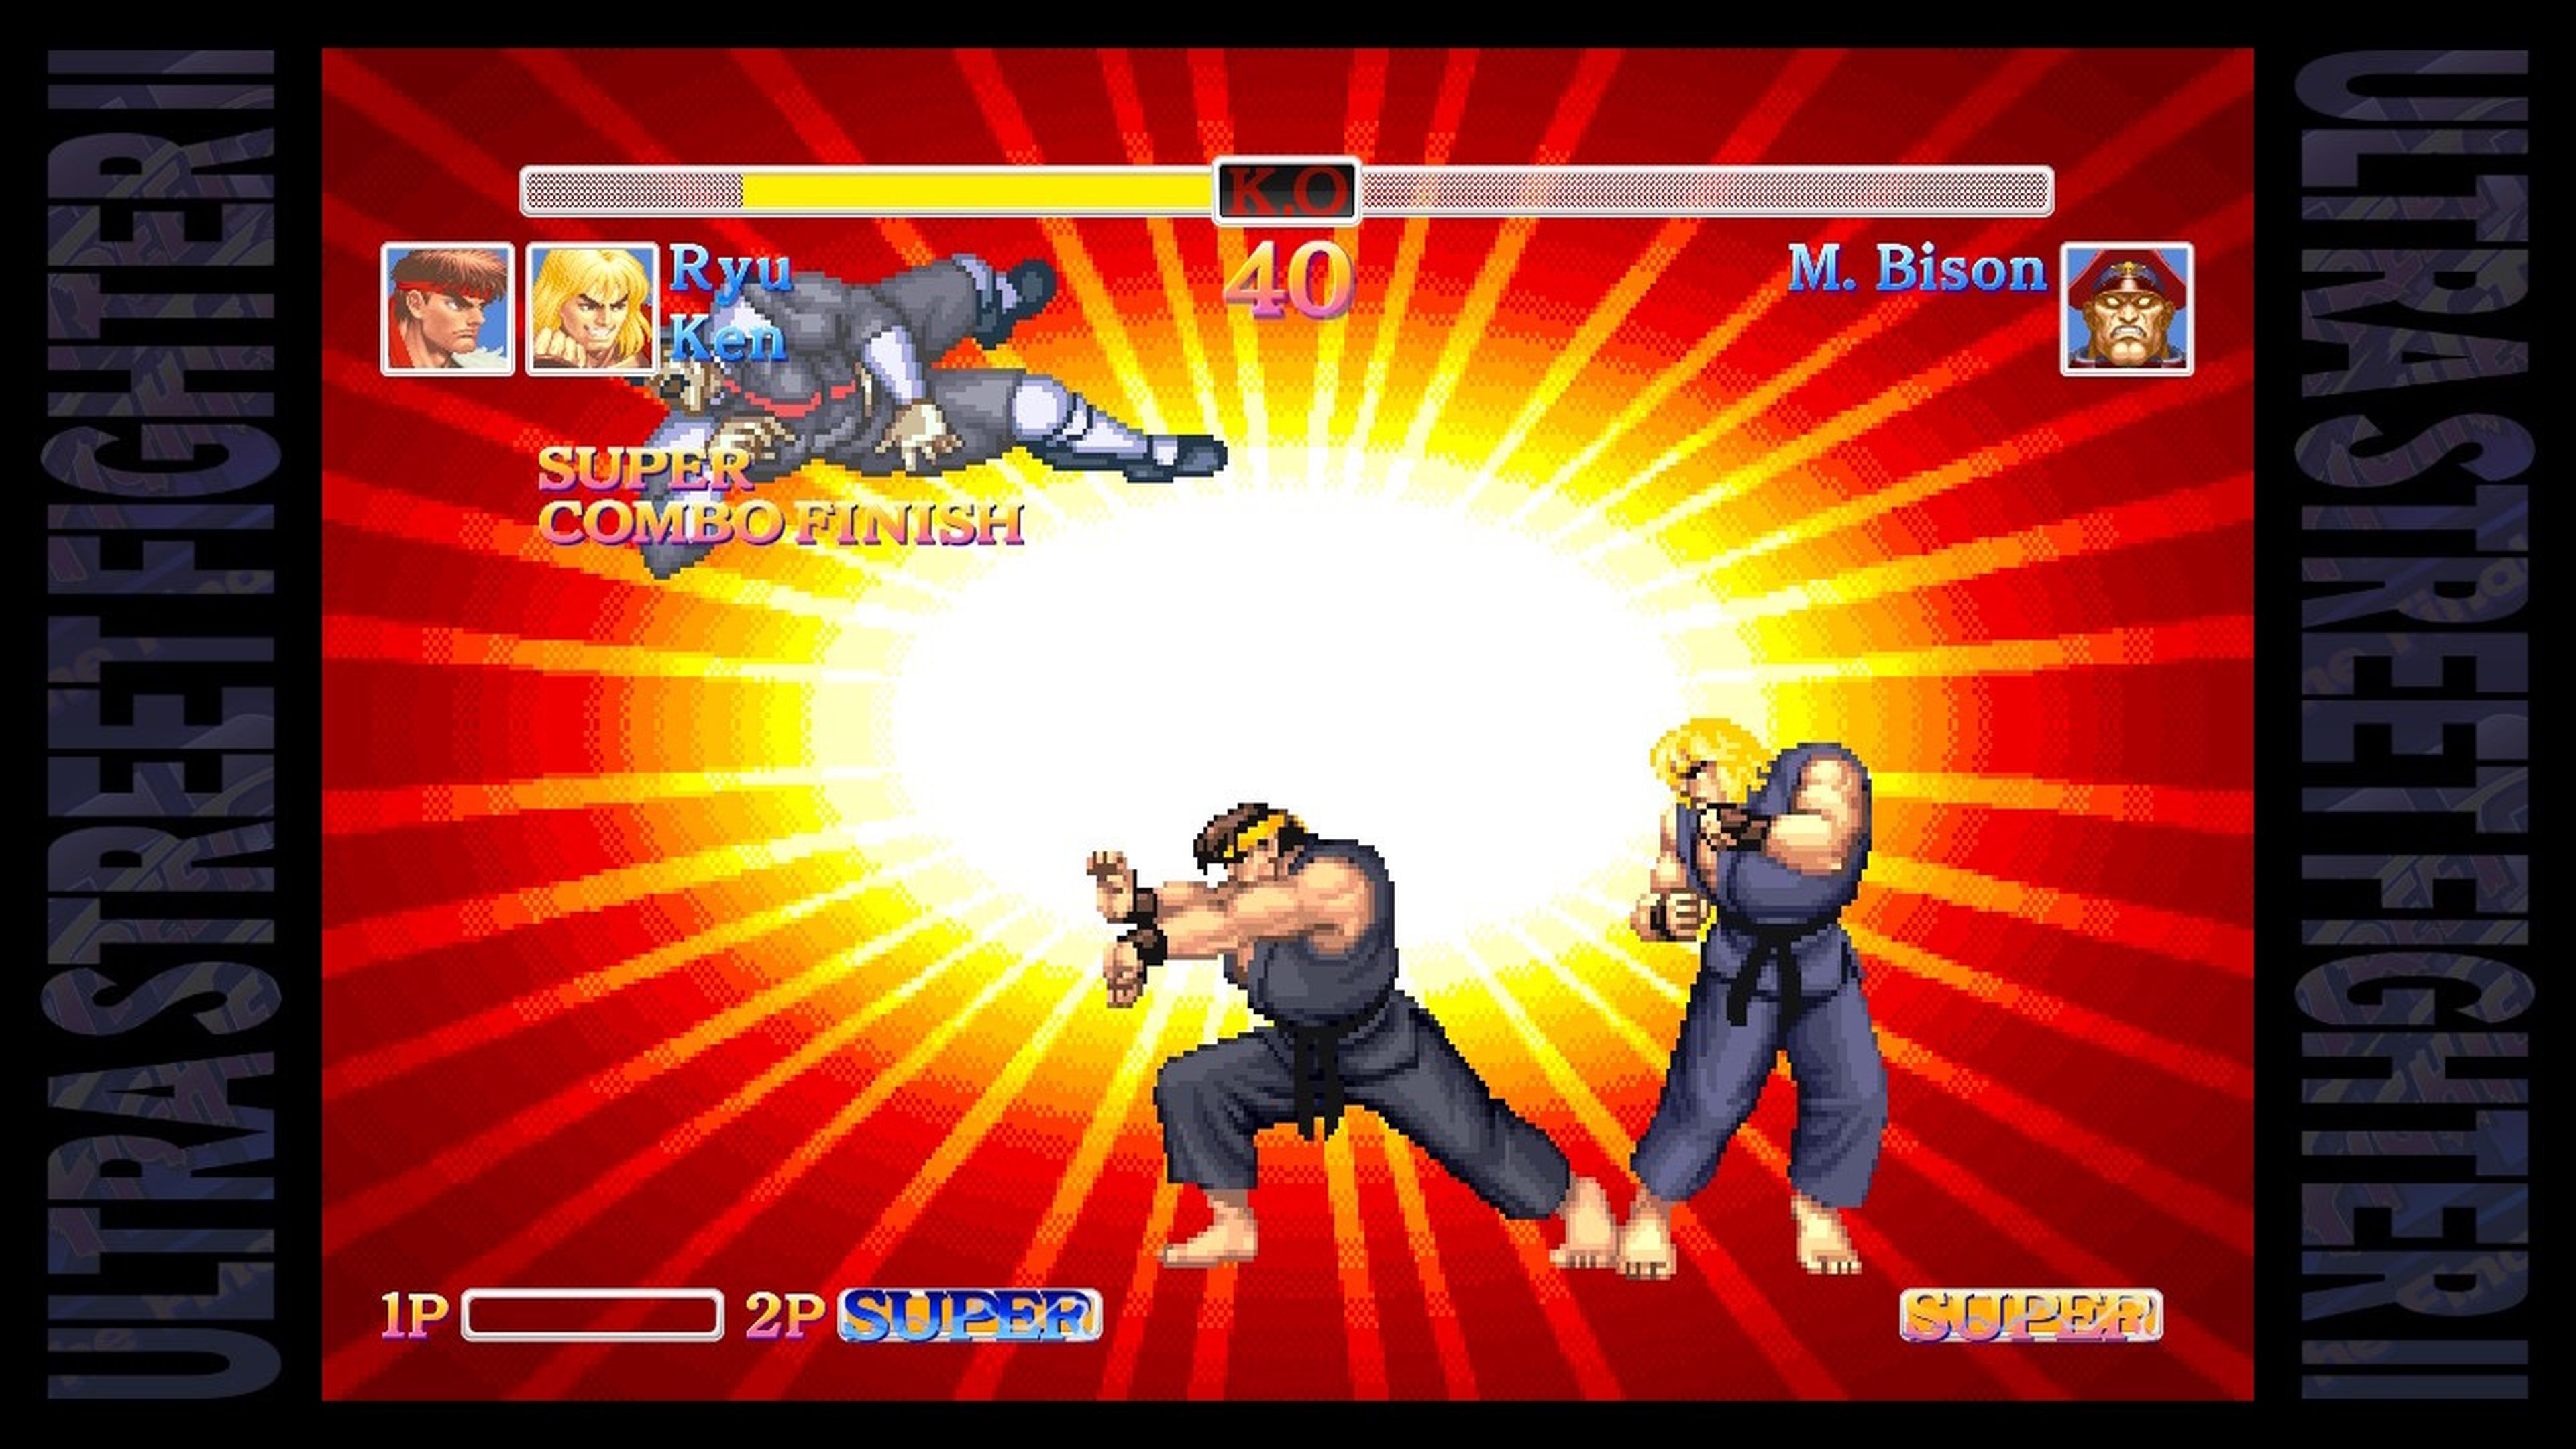 Uno de los nuevos modos de Ultra Street Fighter II es Combate Dúo, duelos 2 vs 1 con sus propias reglas. Lástima que sólo ofrezca cuatro combates.